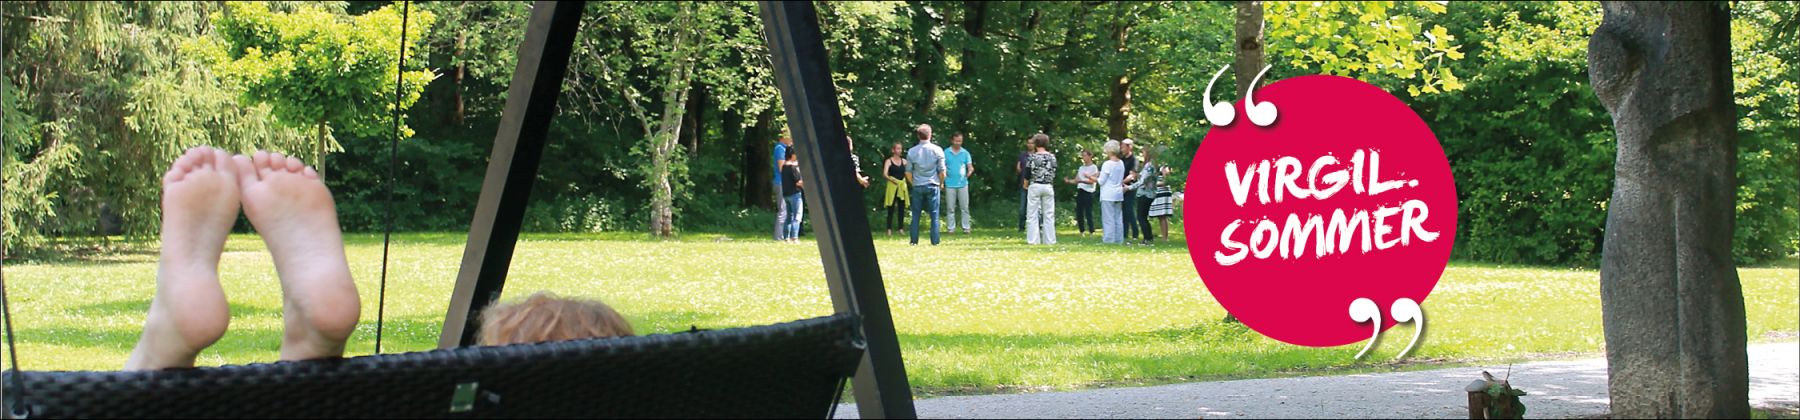 Jeden Samstag Musik im Park von St. Virgil, Salzburg